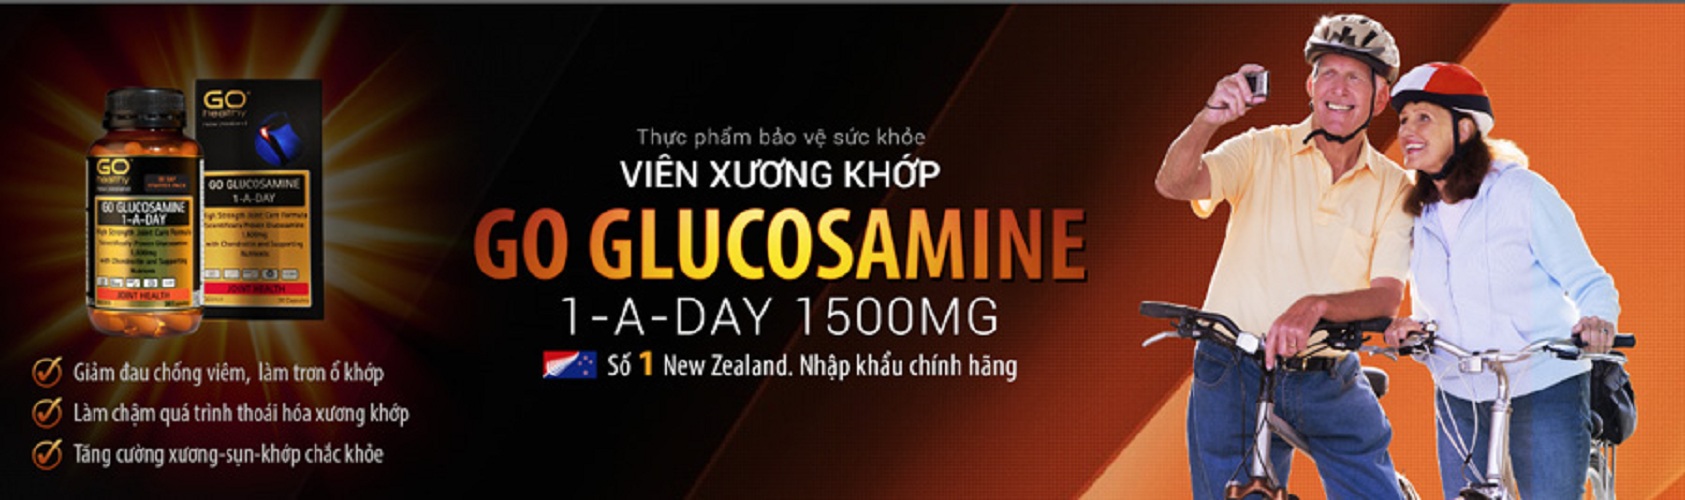 Bộ sản phẩm 3  hộp viên uống bổ xương khớp glucosamine nhập khẩu chính hãng New Zealand GO GLUCOSAMINE 1-A-DAY 1500mg (30 viên) giúp tăng dịch khớp, giảm thoái hóa khớp, khô khớp, cứng khớp; giúp xương sụn khớp khỏe mạnh